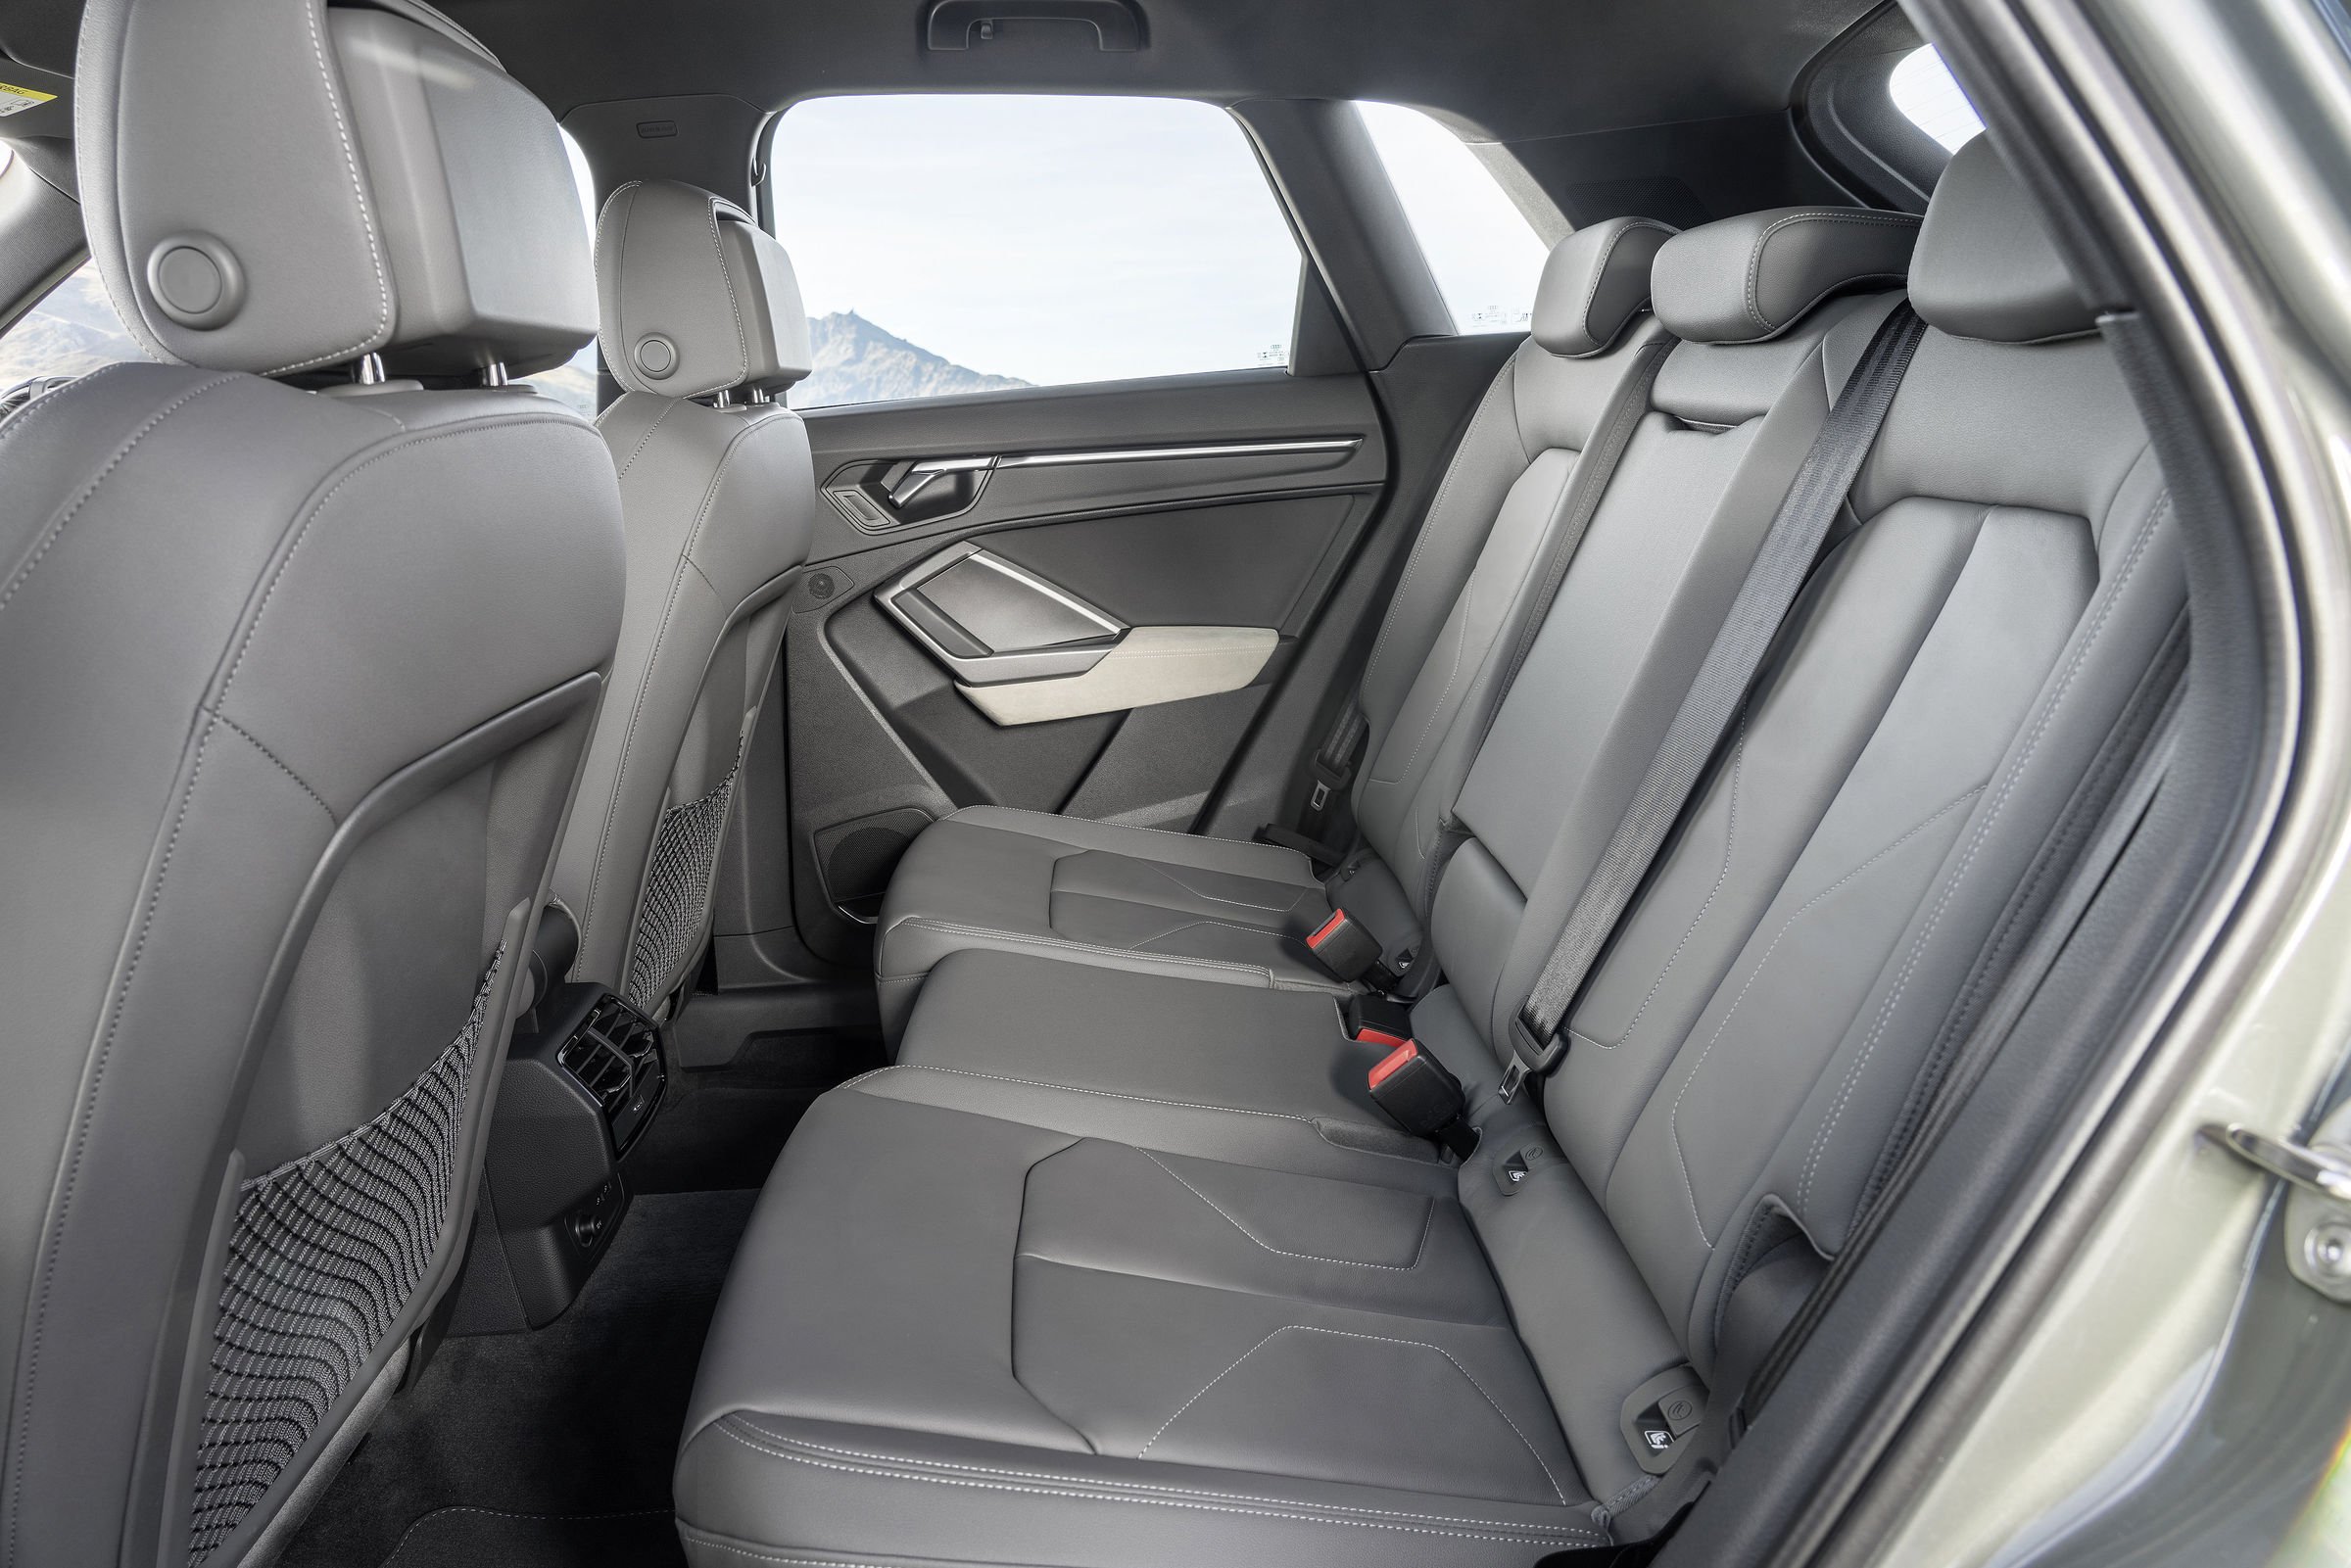 أودي Q3 interior - Rear Seats